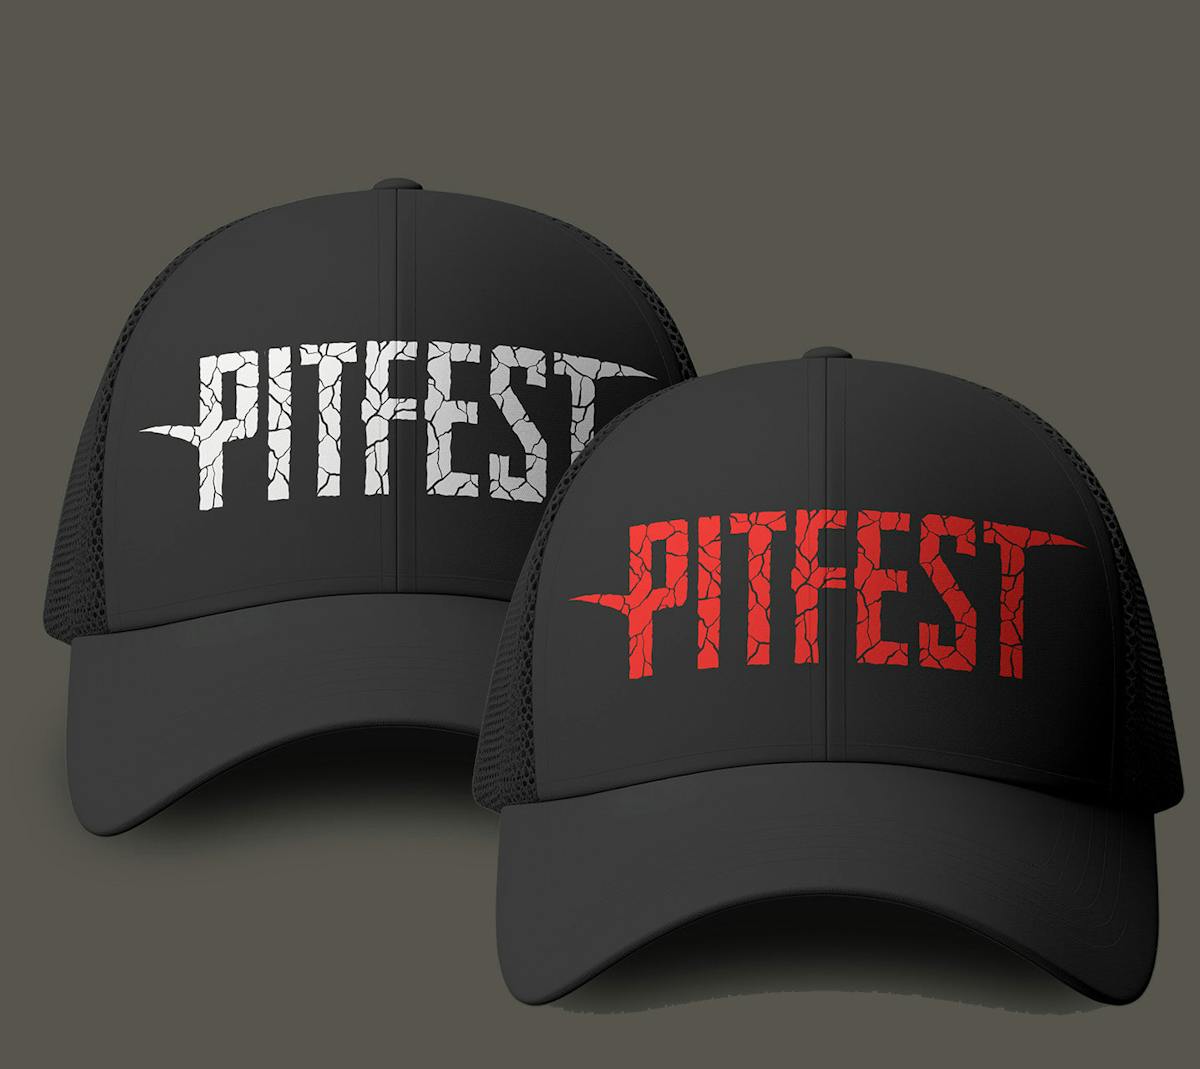 Pitfest trucker cap